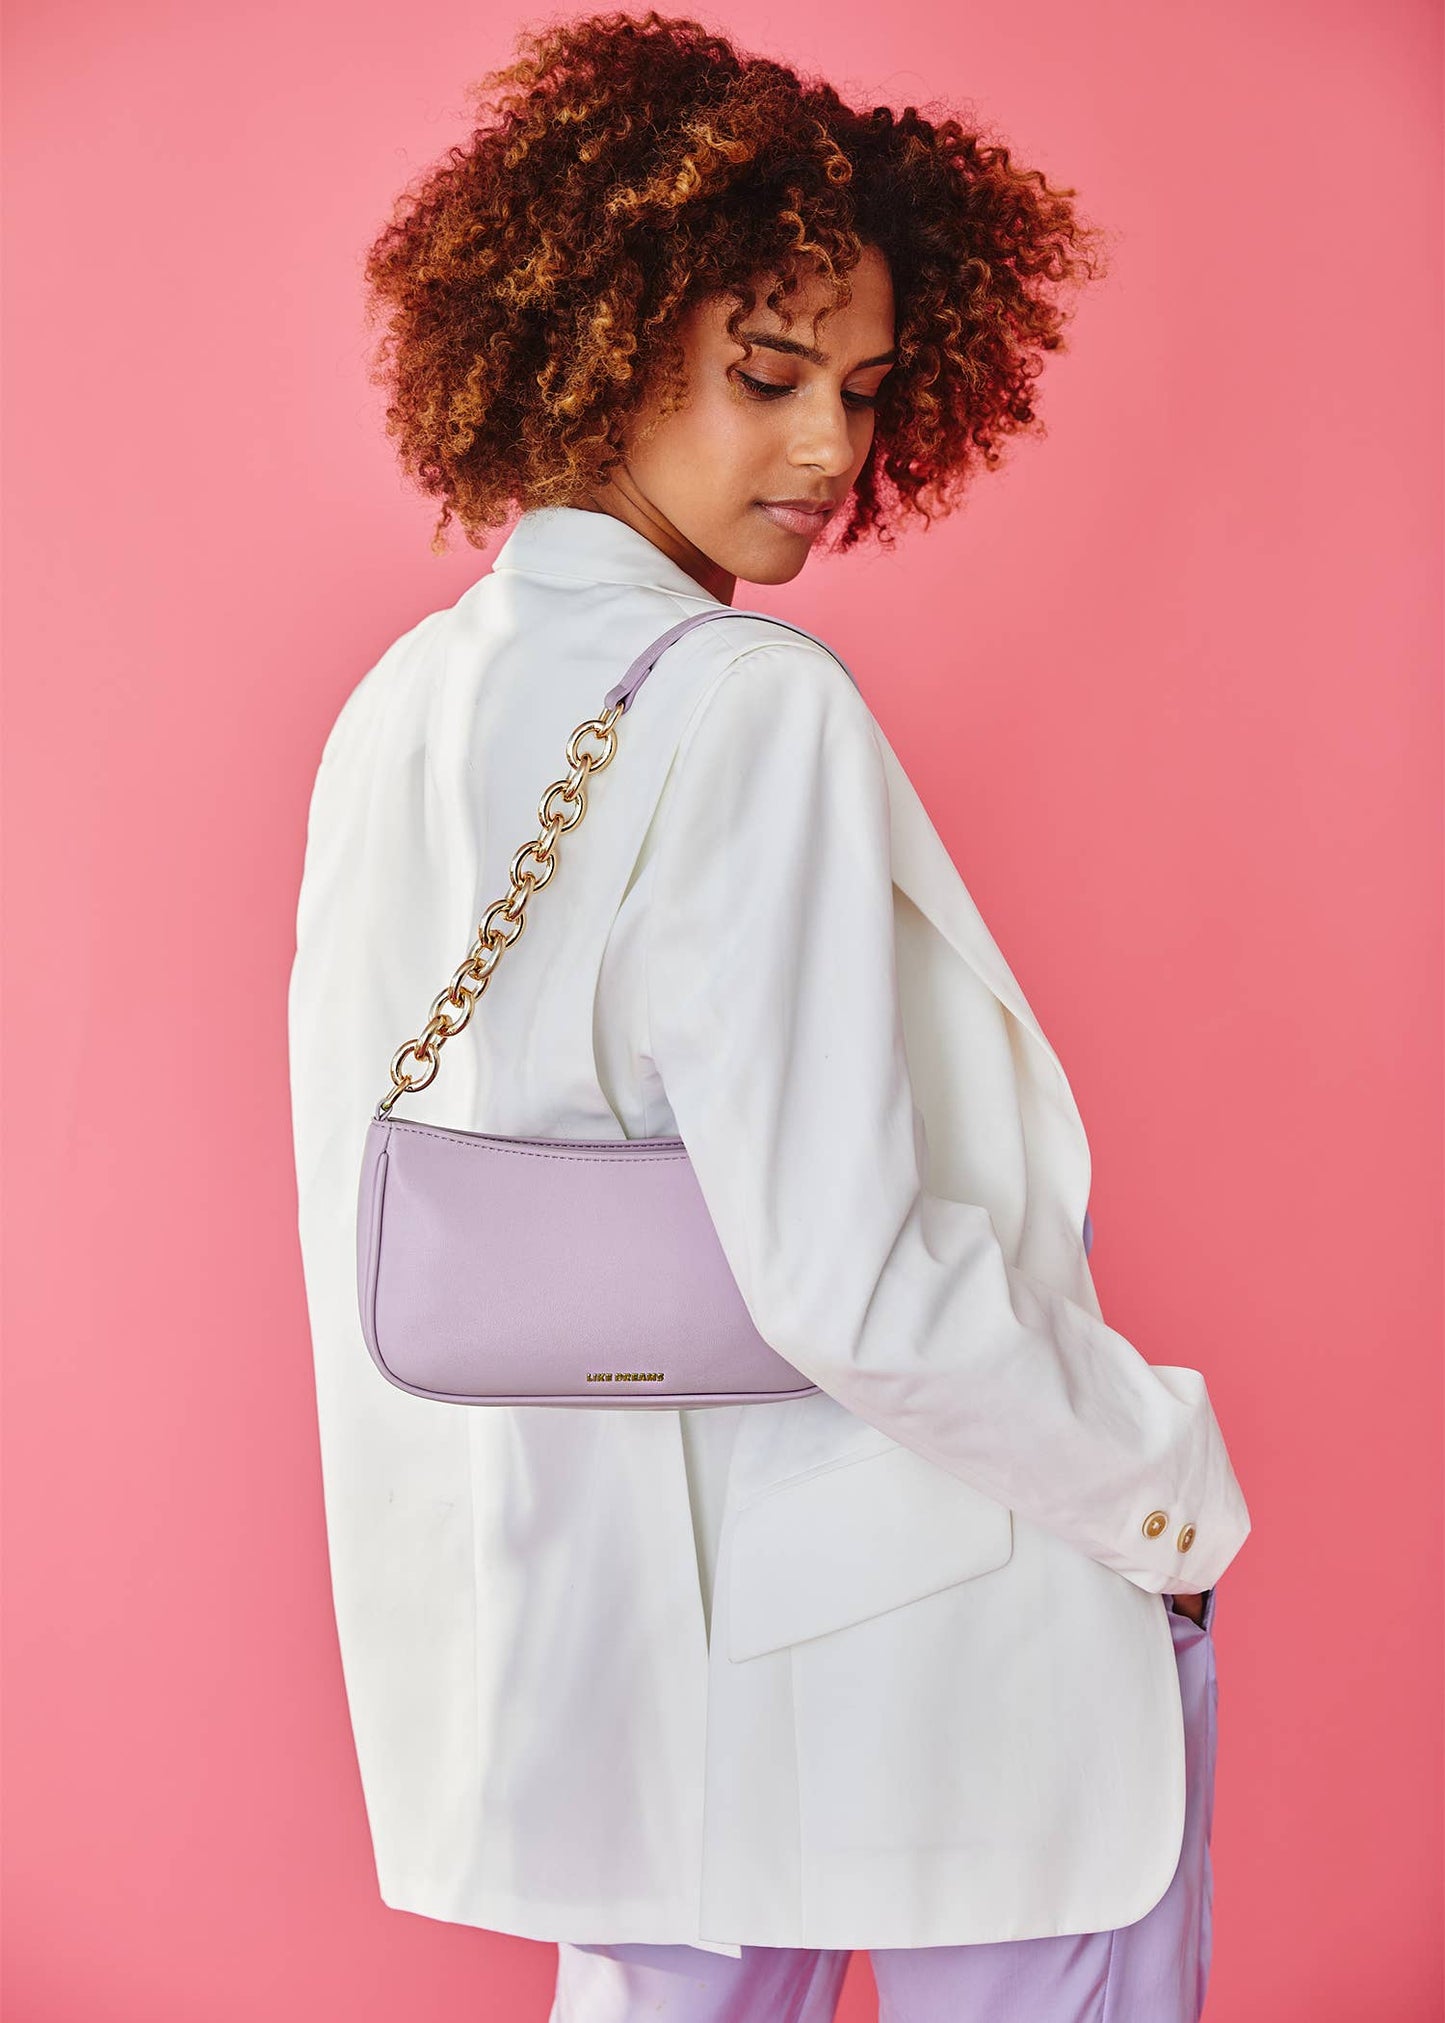 Sky Vintage Shoulder Bag: Candy Pink